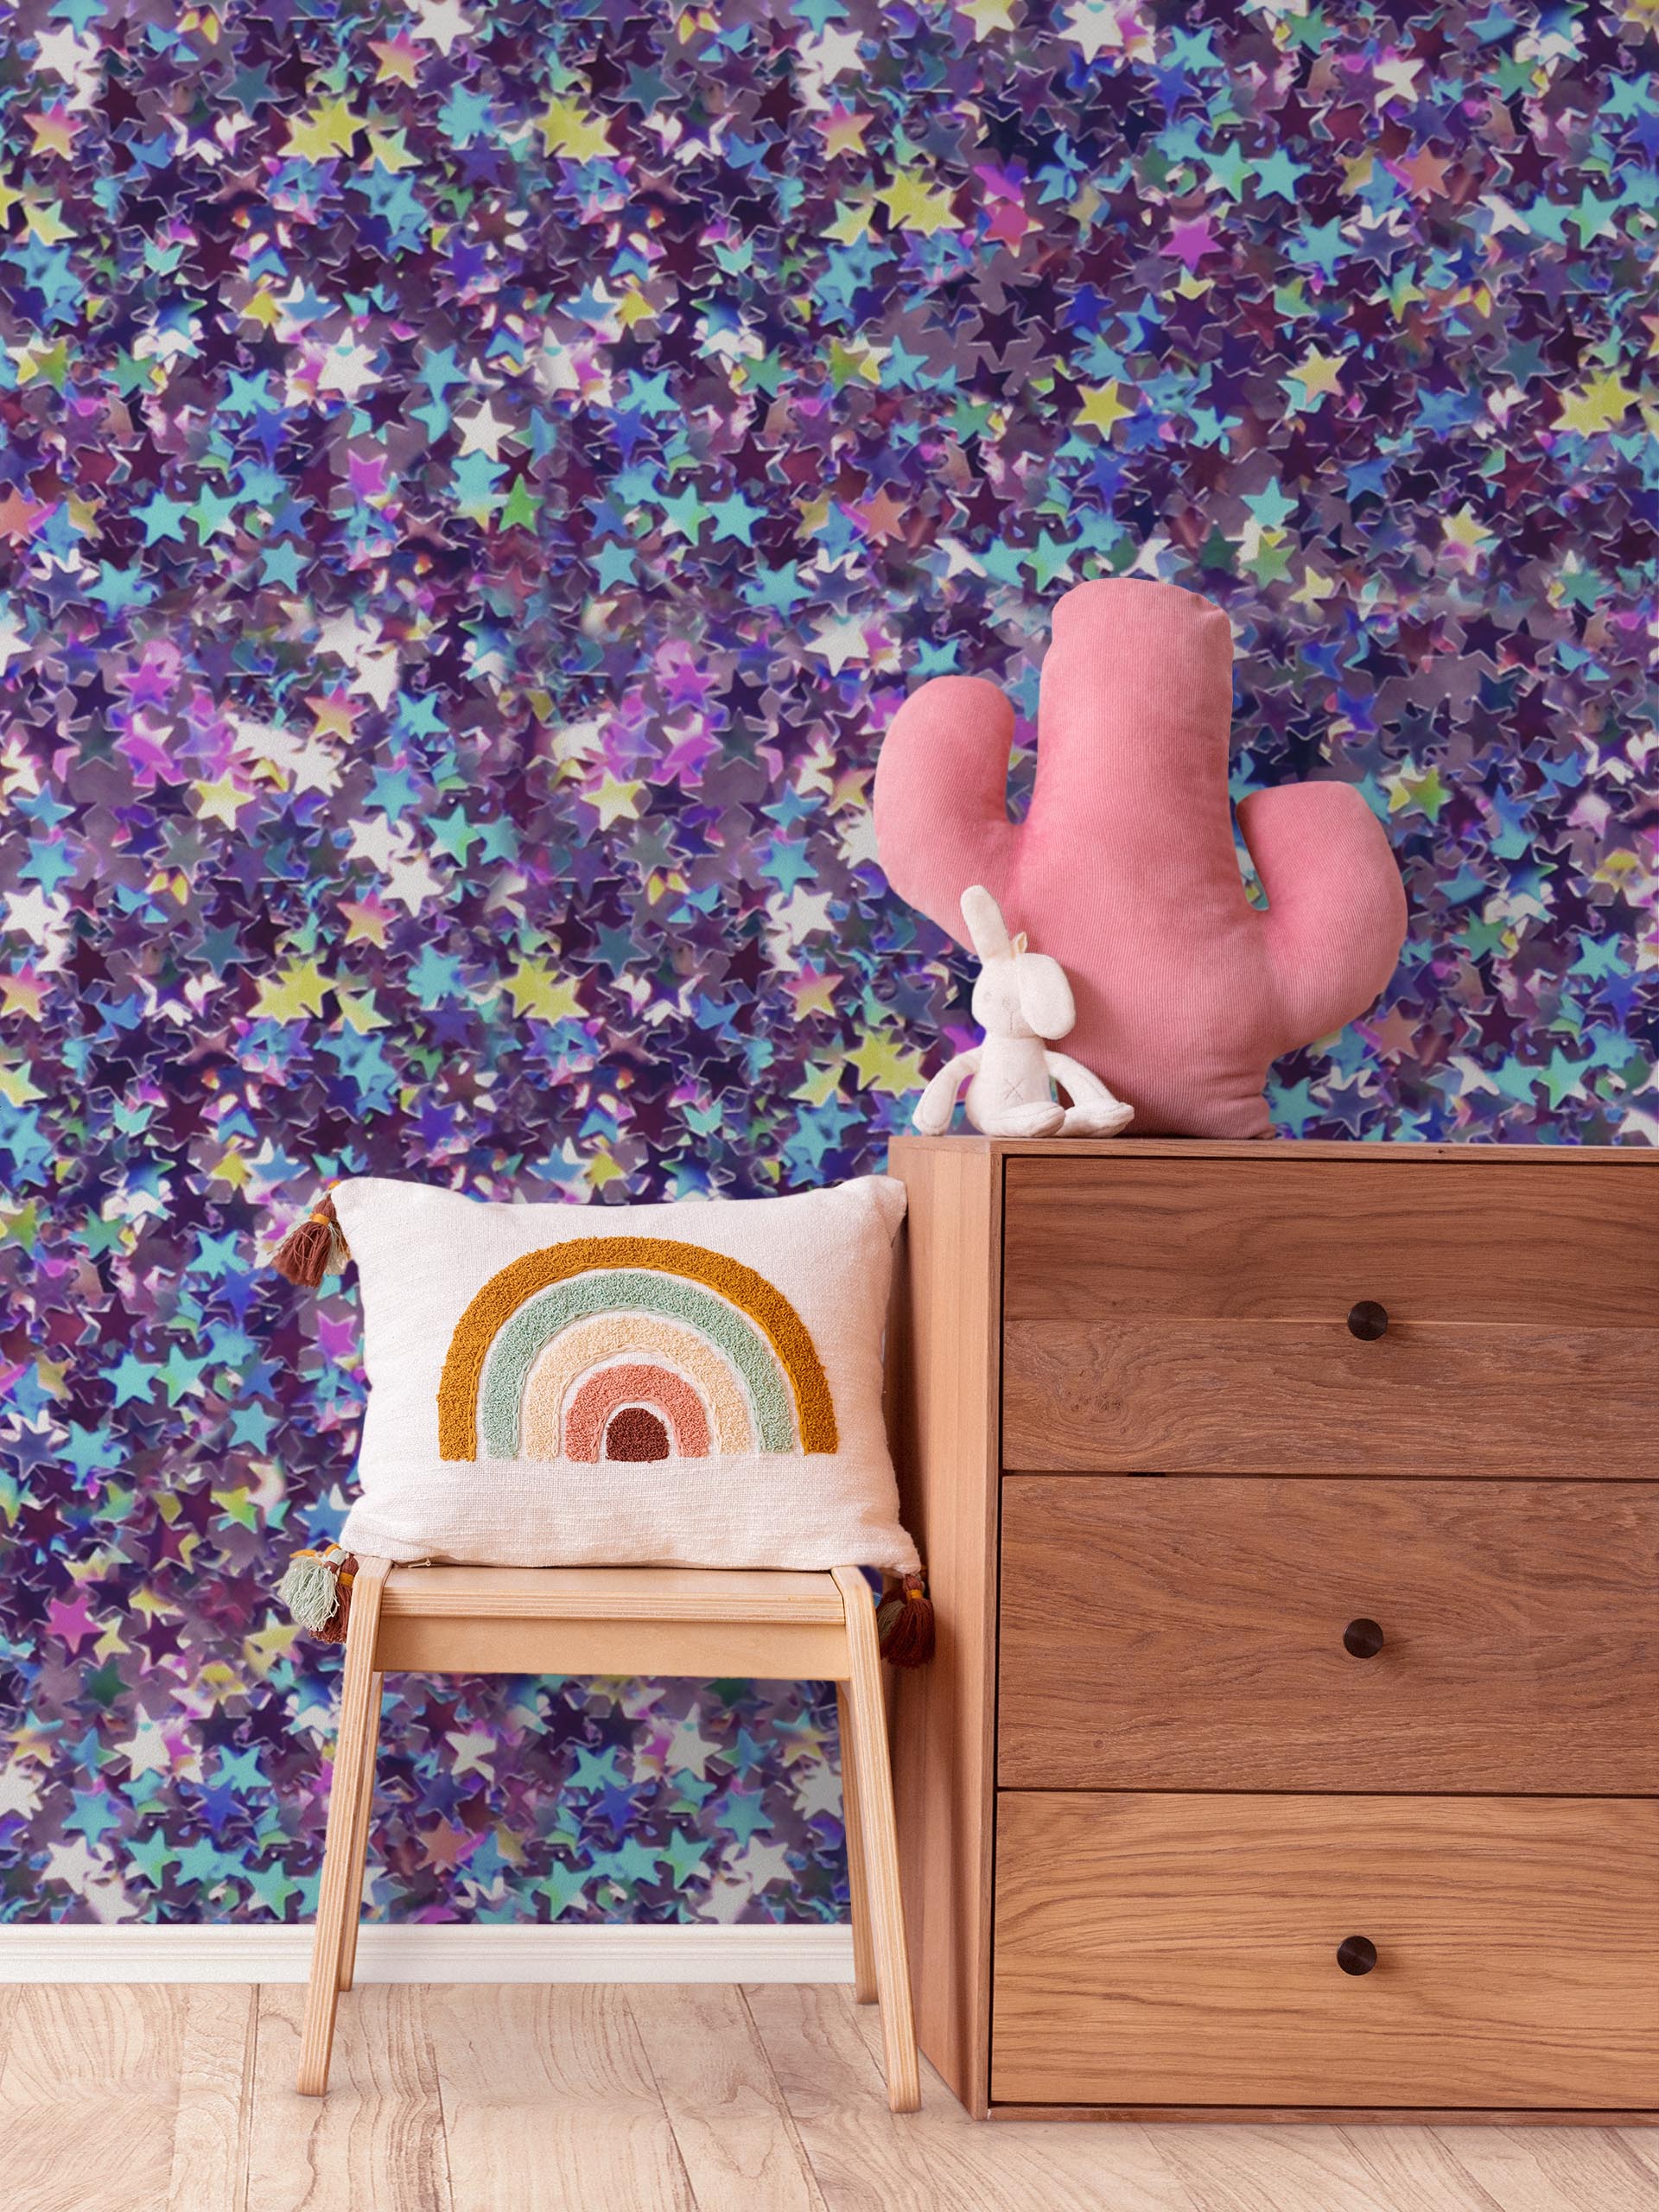 Décoration murale chambre Violet et paillettes : papier peint tendance